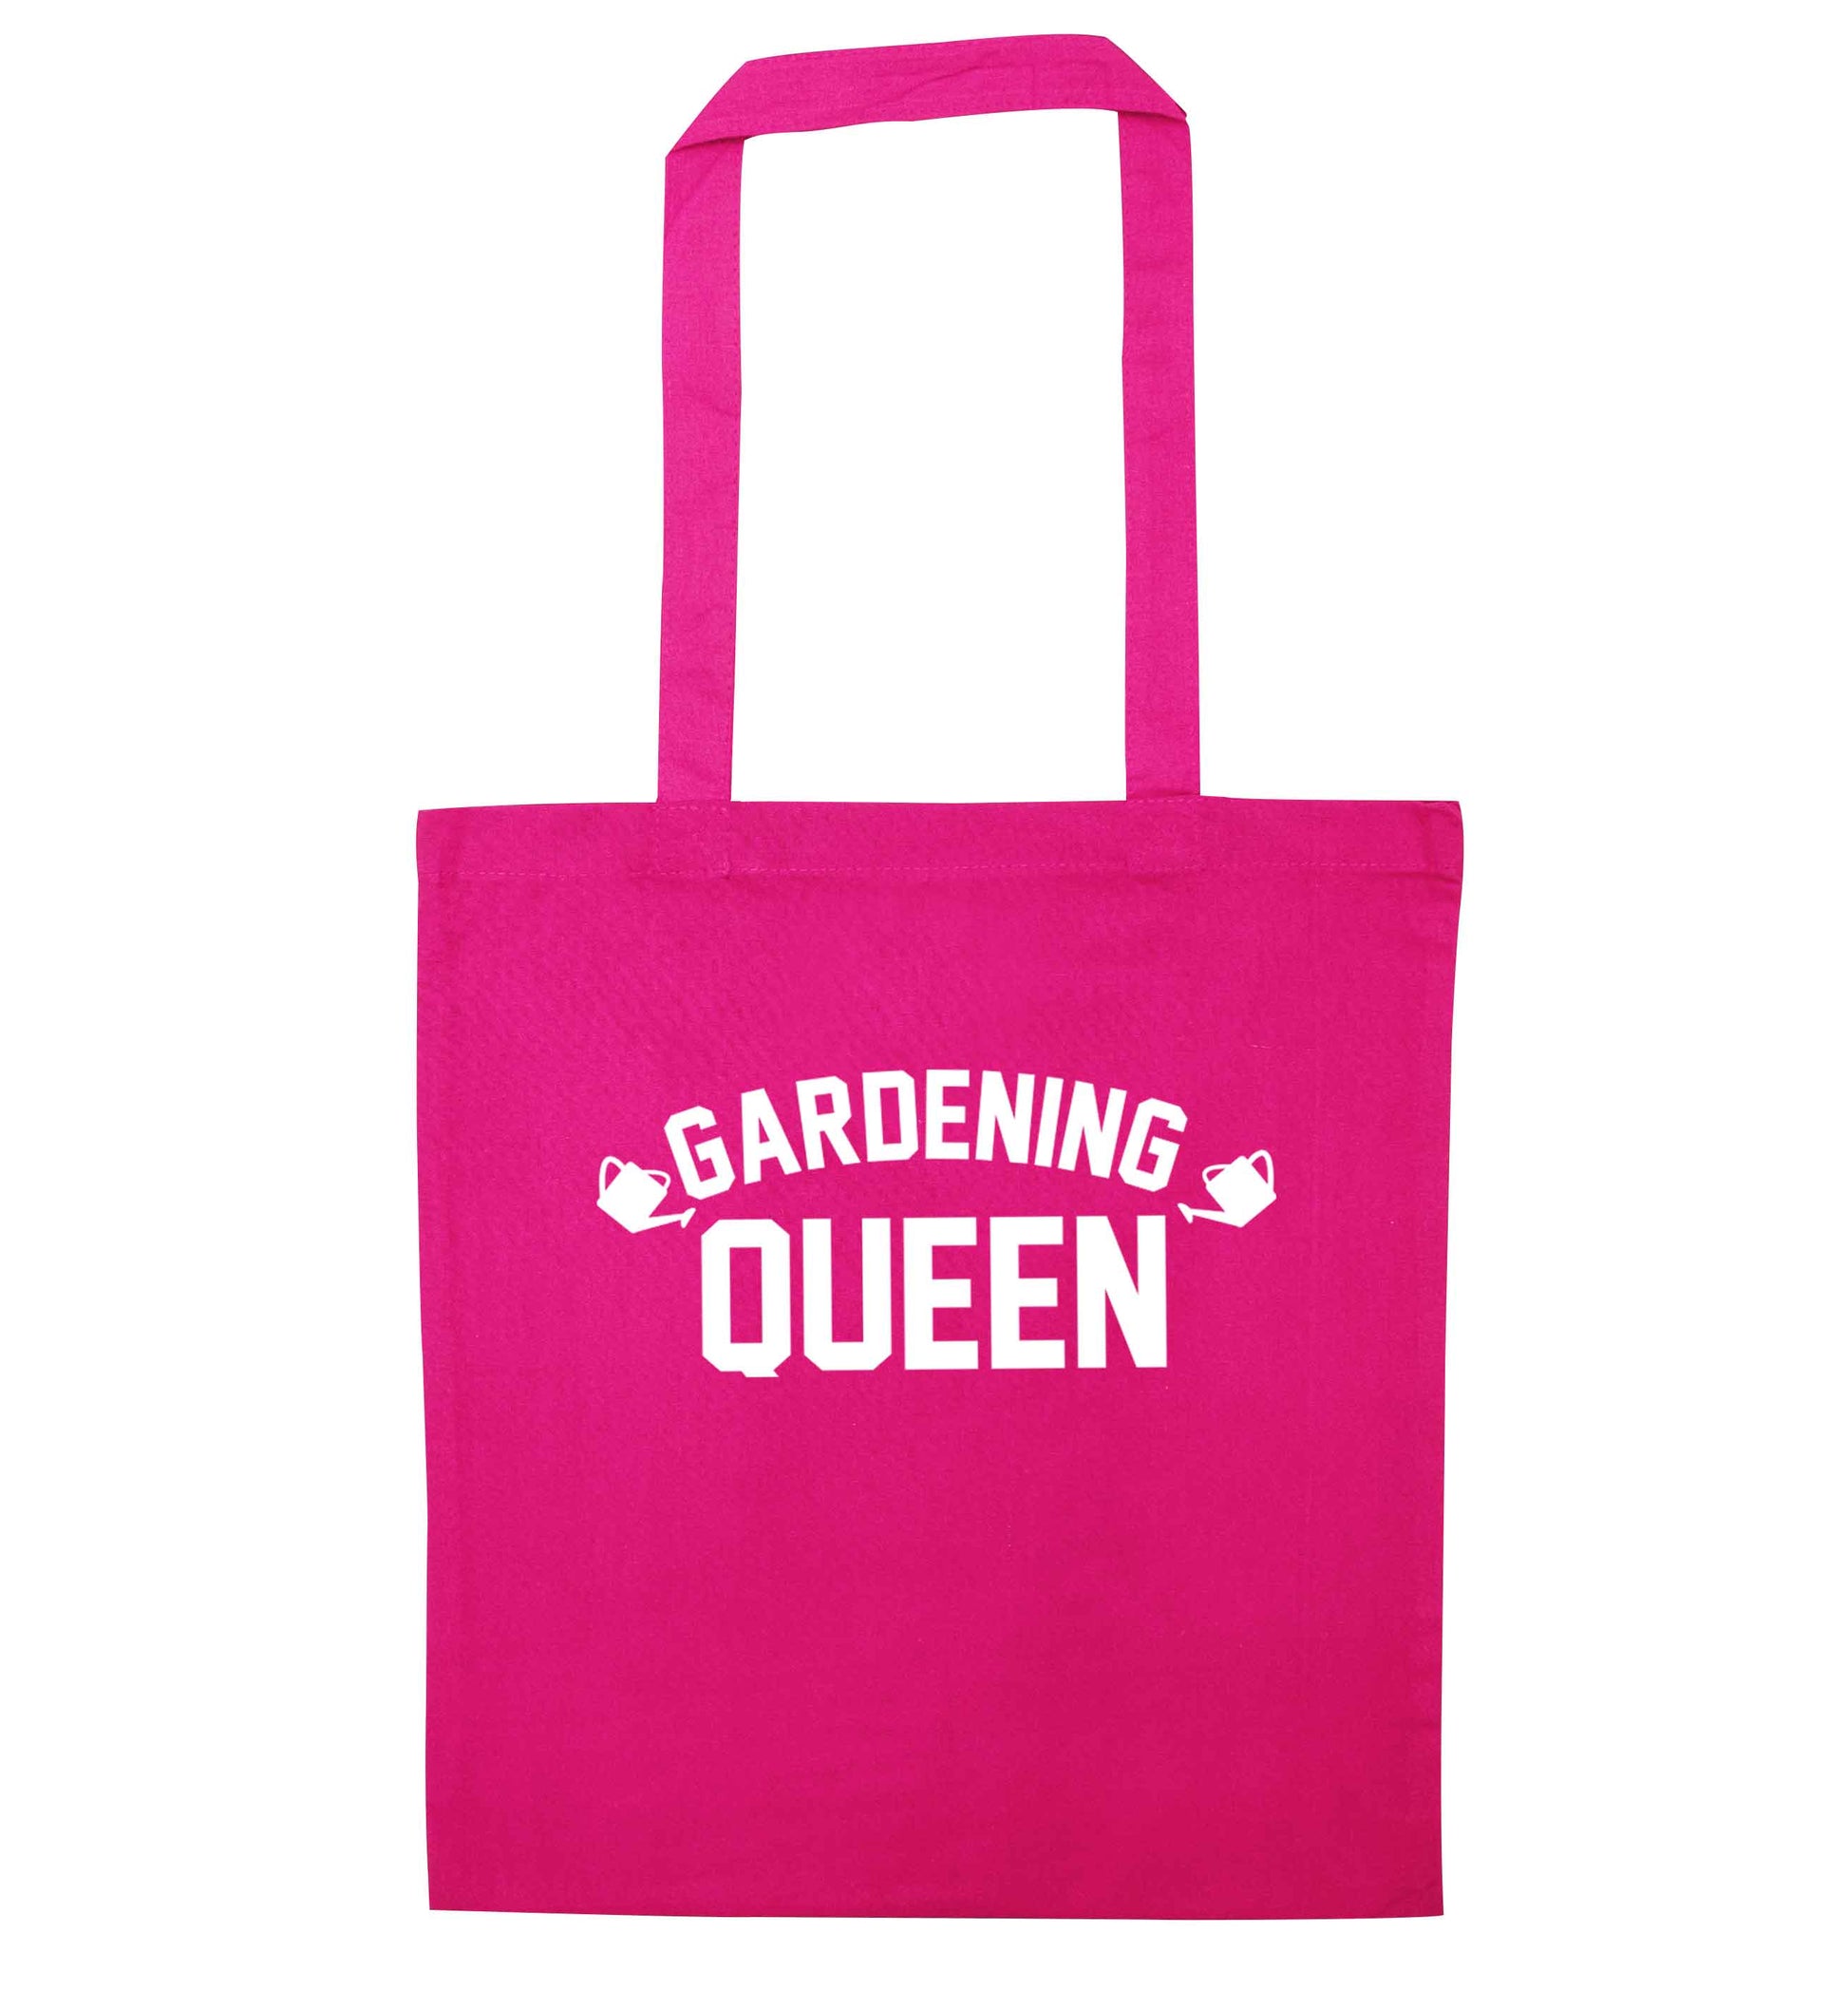 Gardening queen pink tote bag